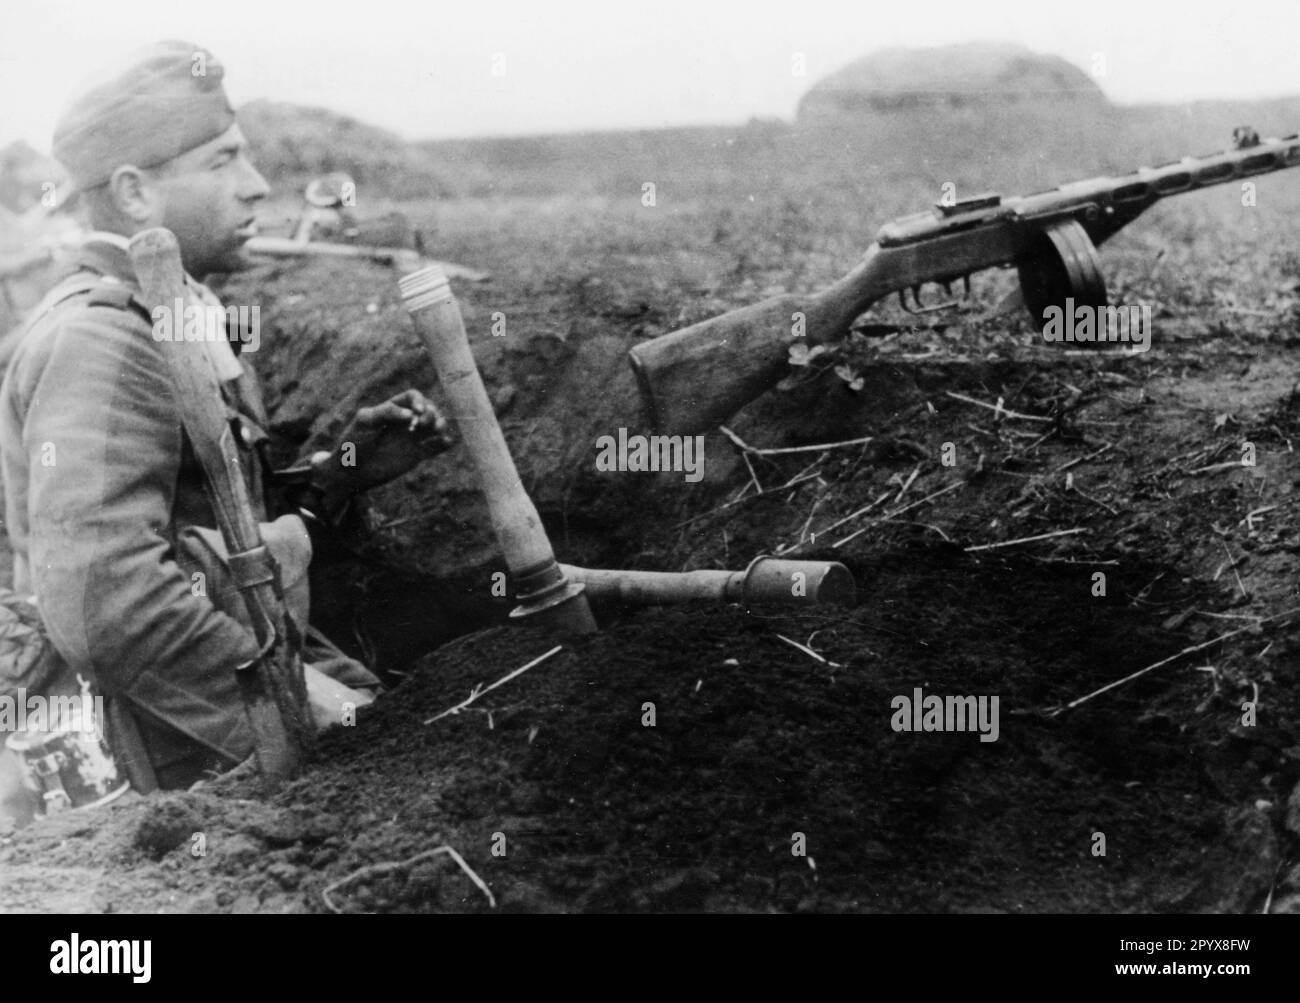 Ein deutscher Infanterist in der Nähe von Poltava im südlichen Teil der Ostfront. Auf dem Grabenhang vor ihm befindet sich eine russische geplünderte Waffe, eine PPSch-41 (Schpagin)-Submaschinenwaffe. Foto: Rebhan. [Maschinelle Übersetzung] Stockfoto